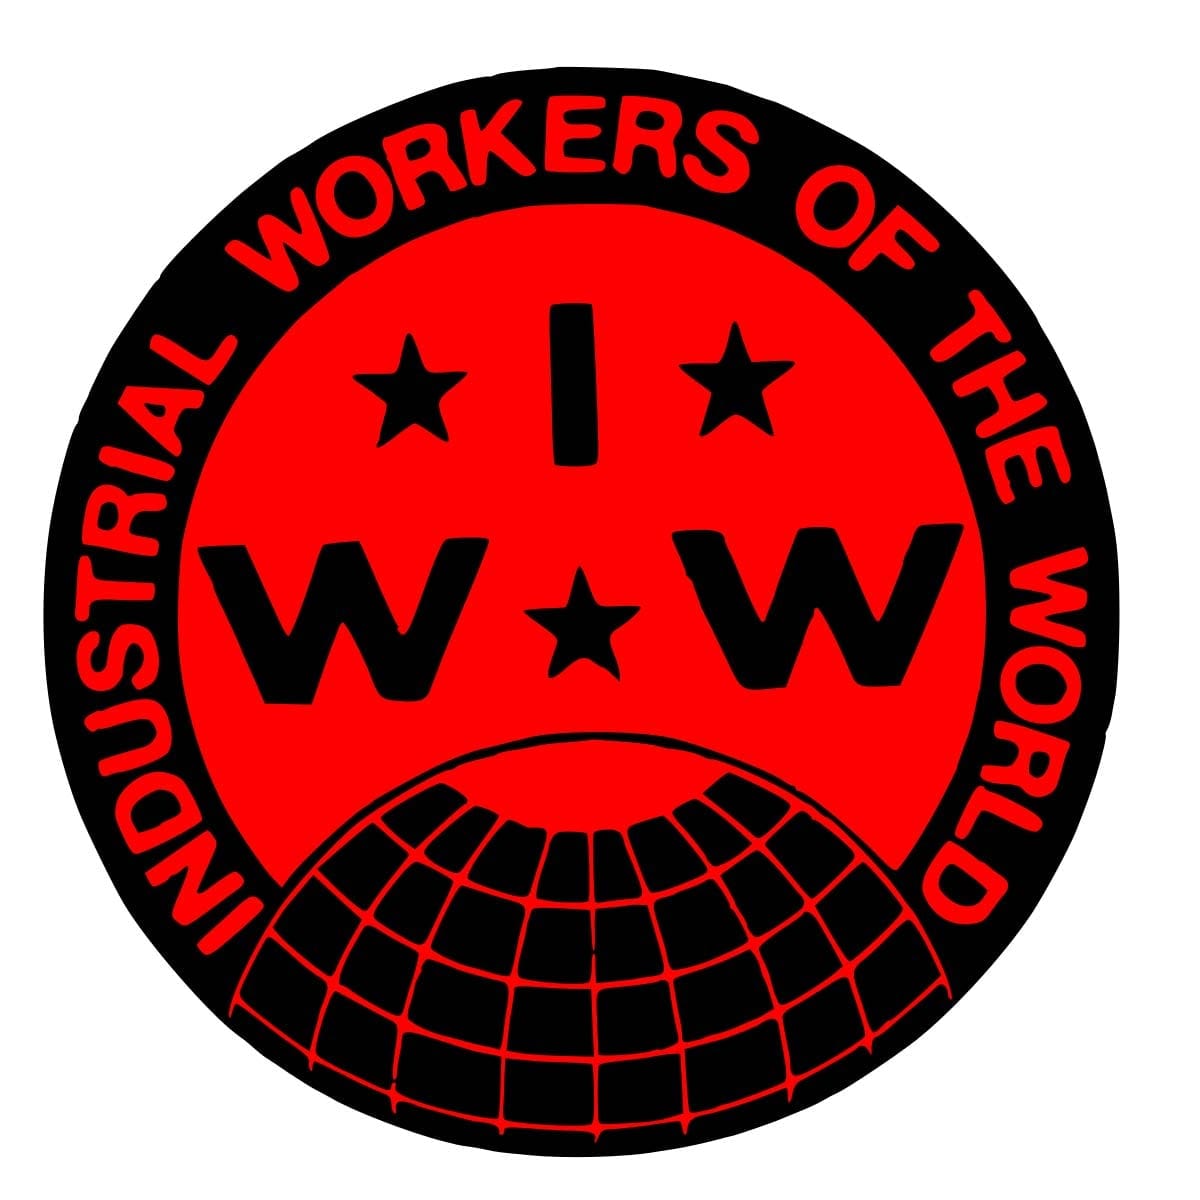 IWW logo